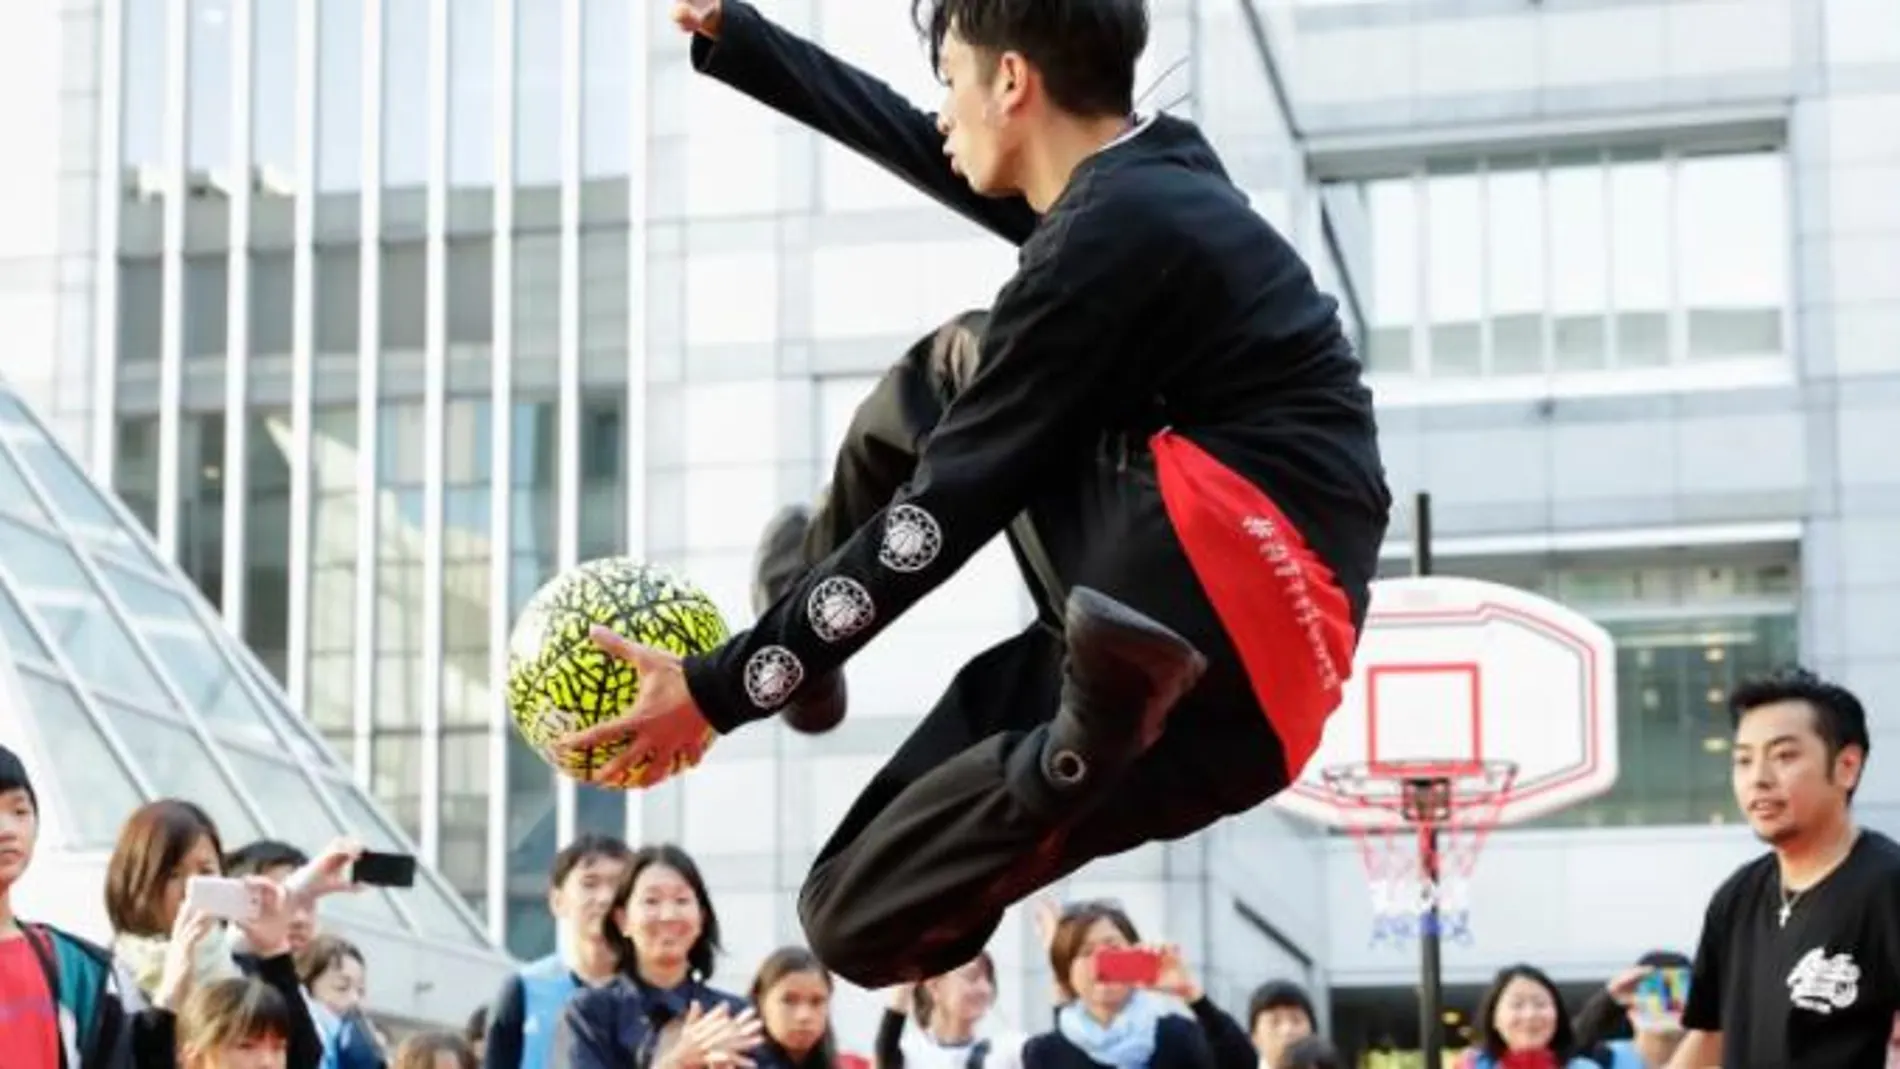 Tokio 2020 publica vídeos inmersivos de atletas para experimentar deportes